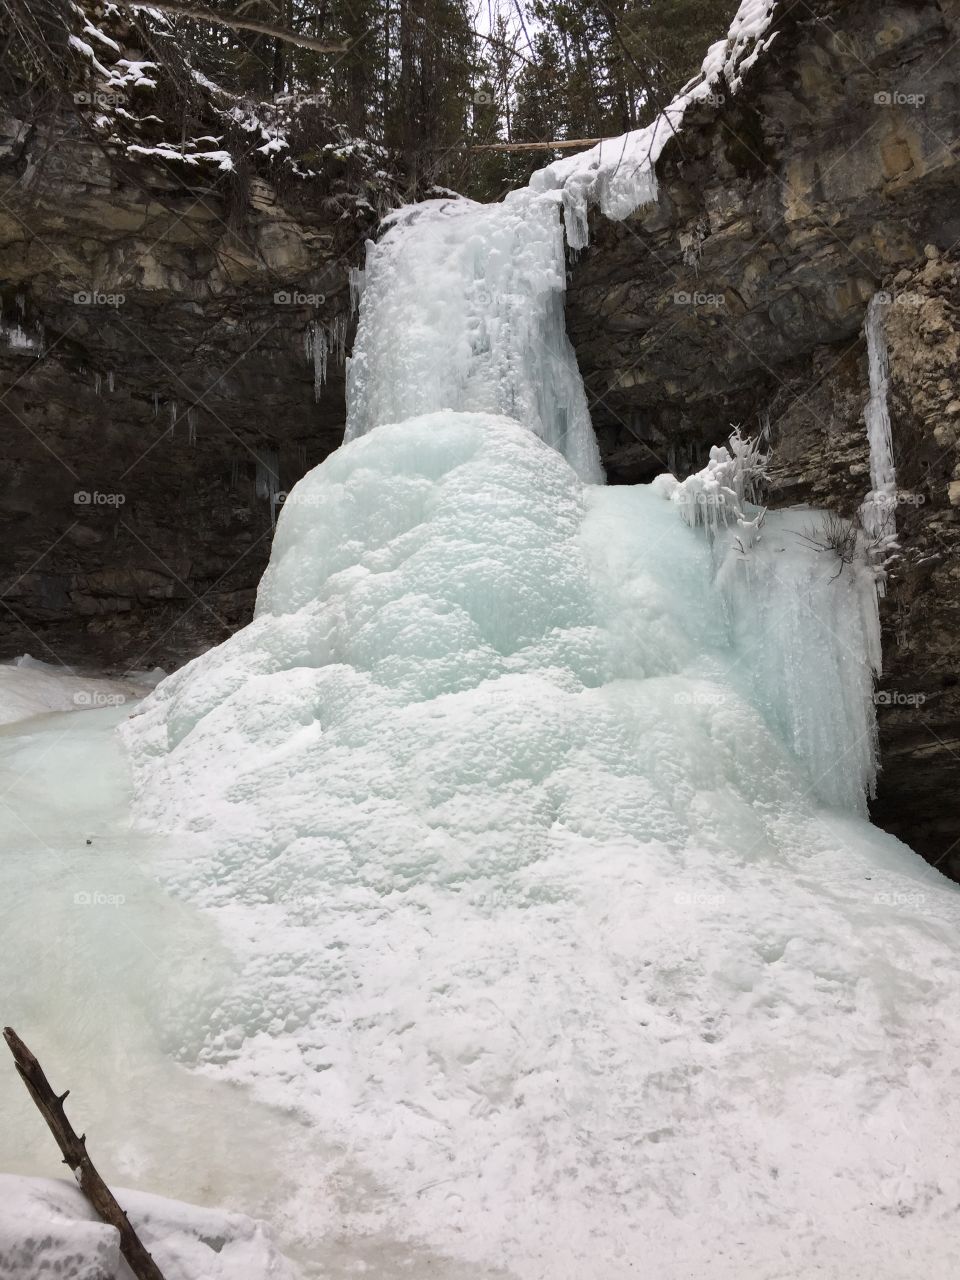 Frozen waterfall in Canada.